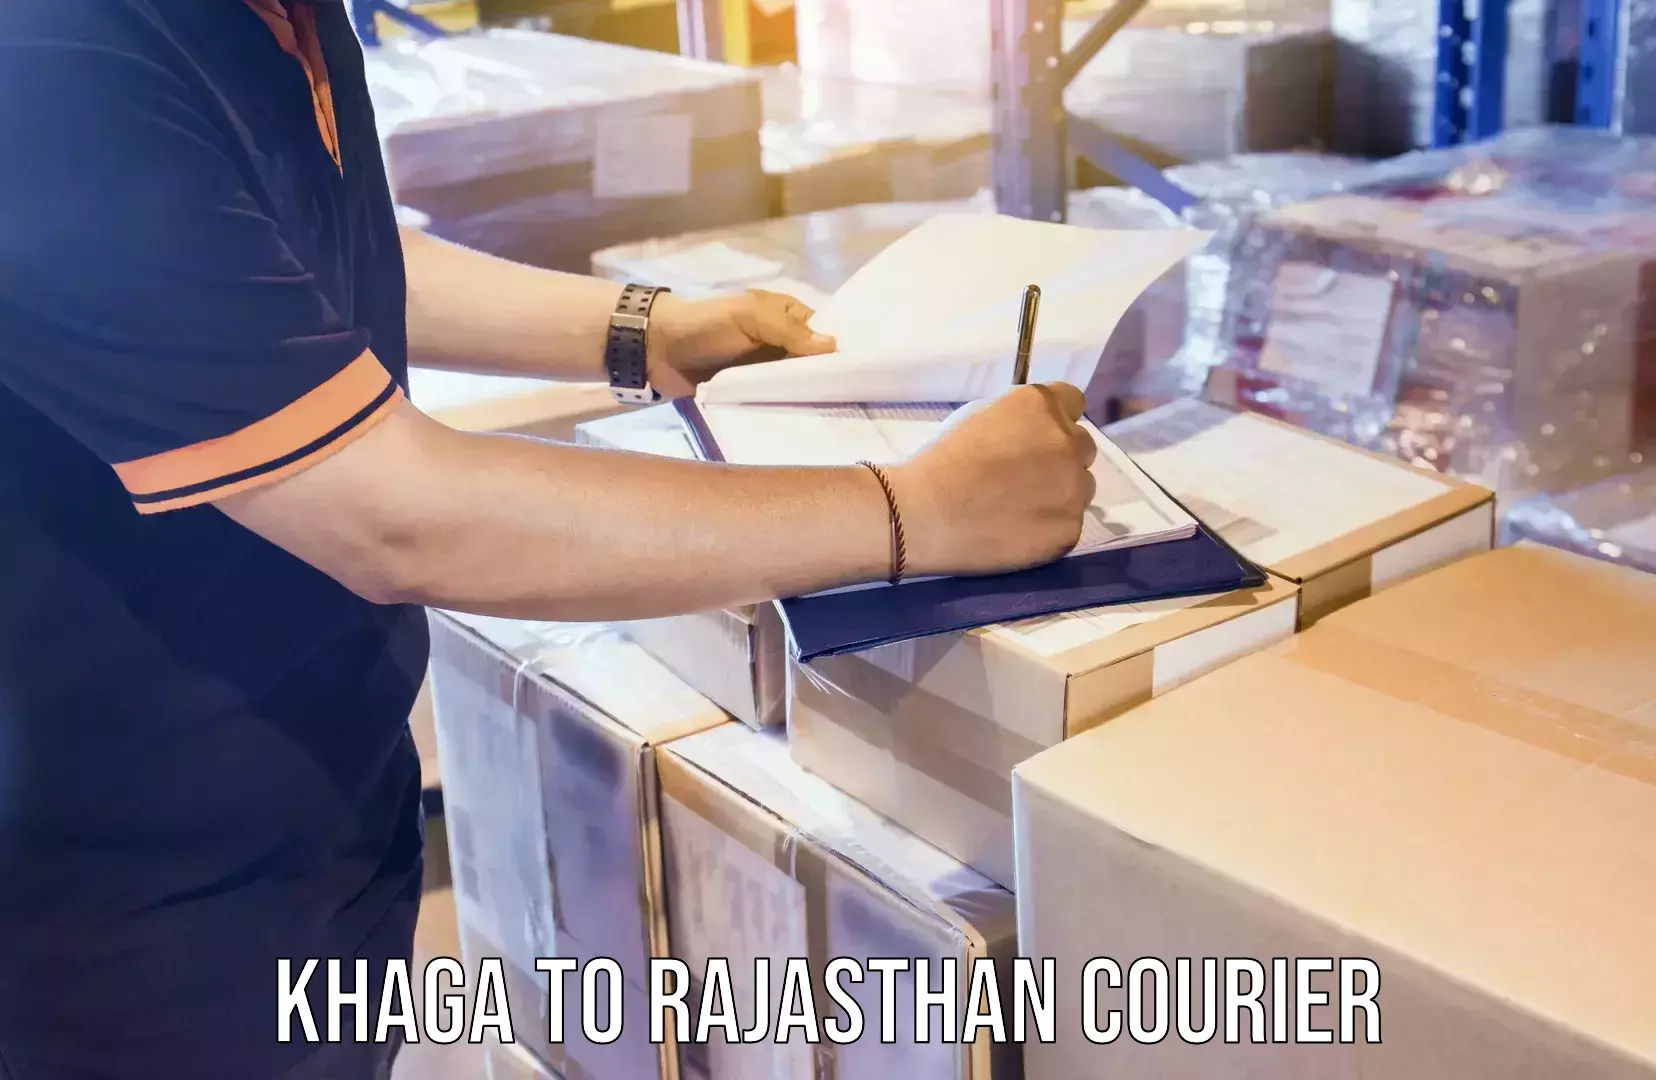 Furniture transport specialists Khaga to Rajasthan